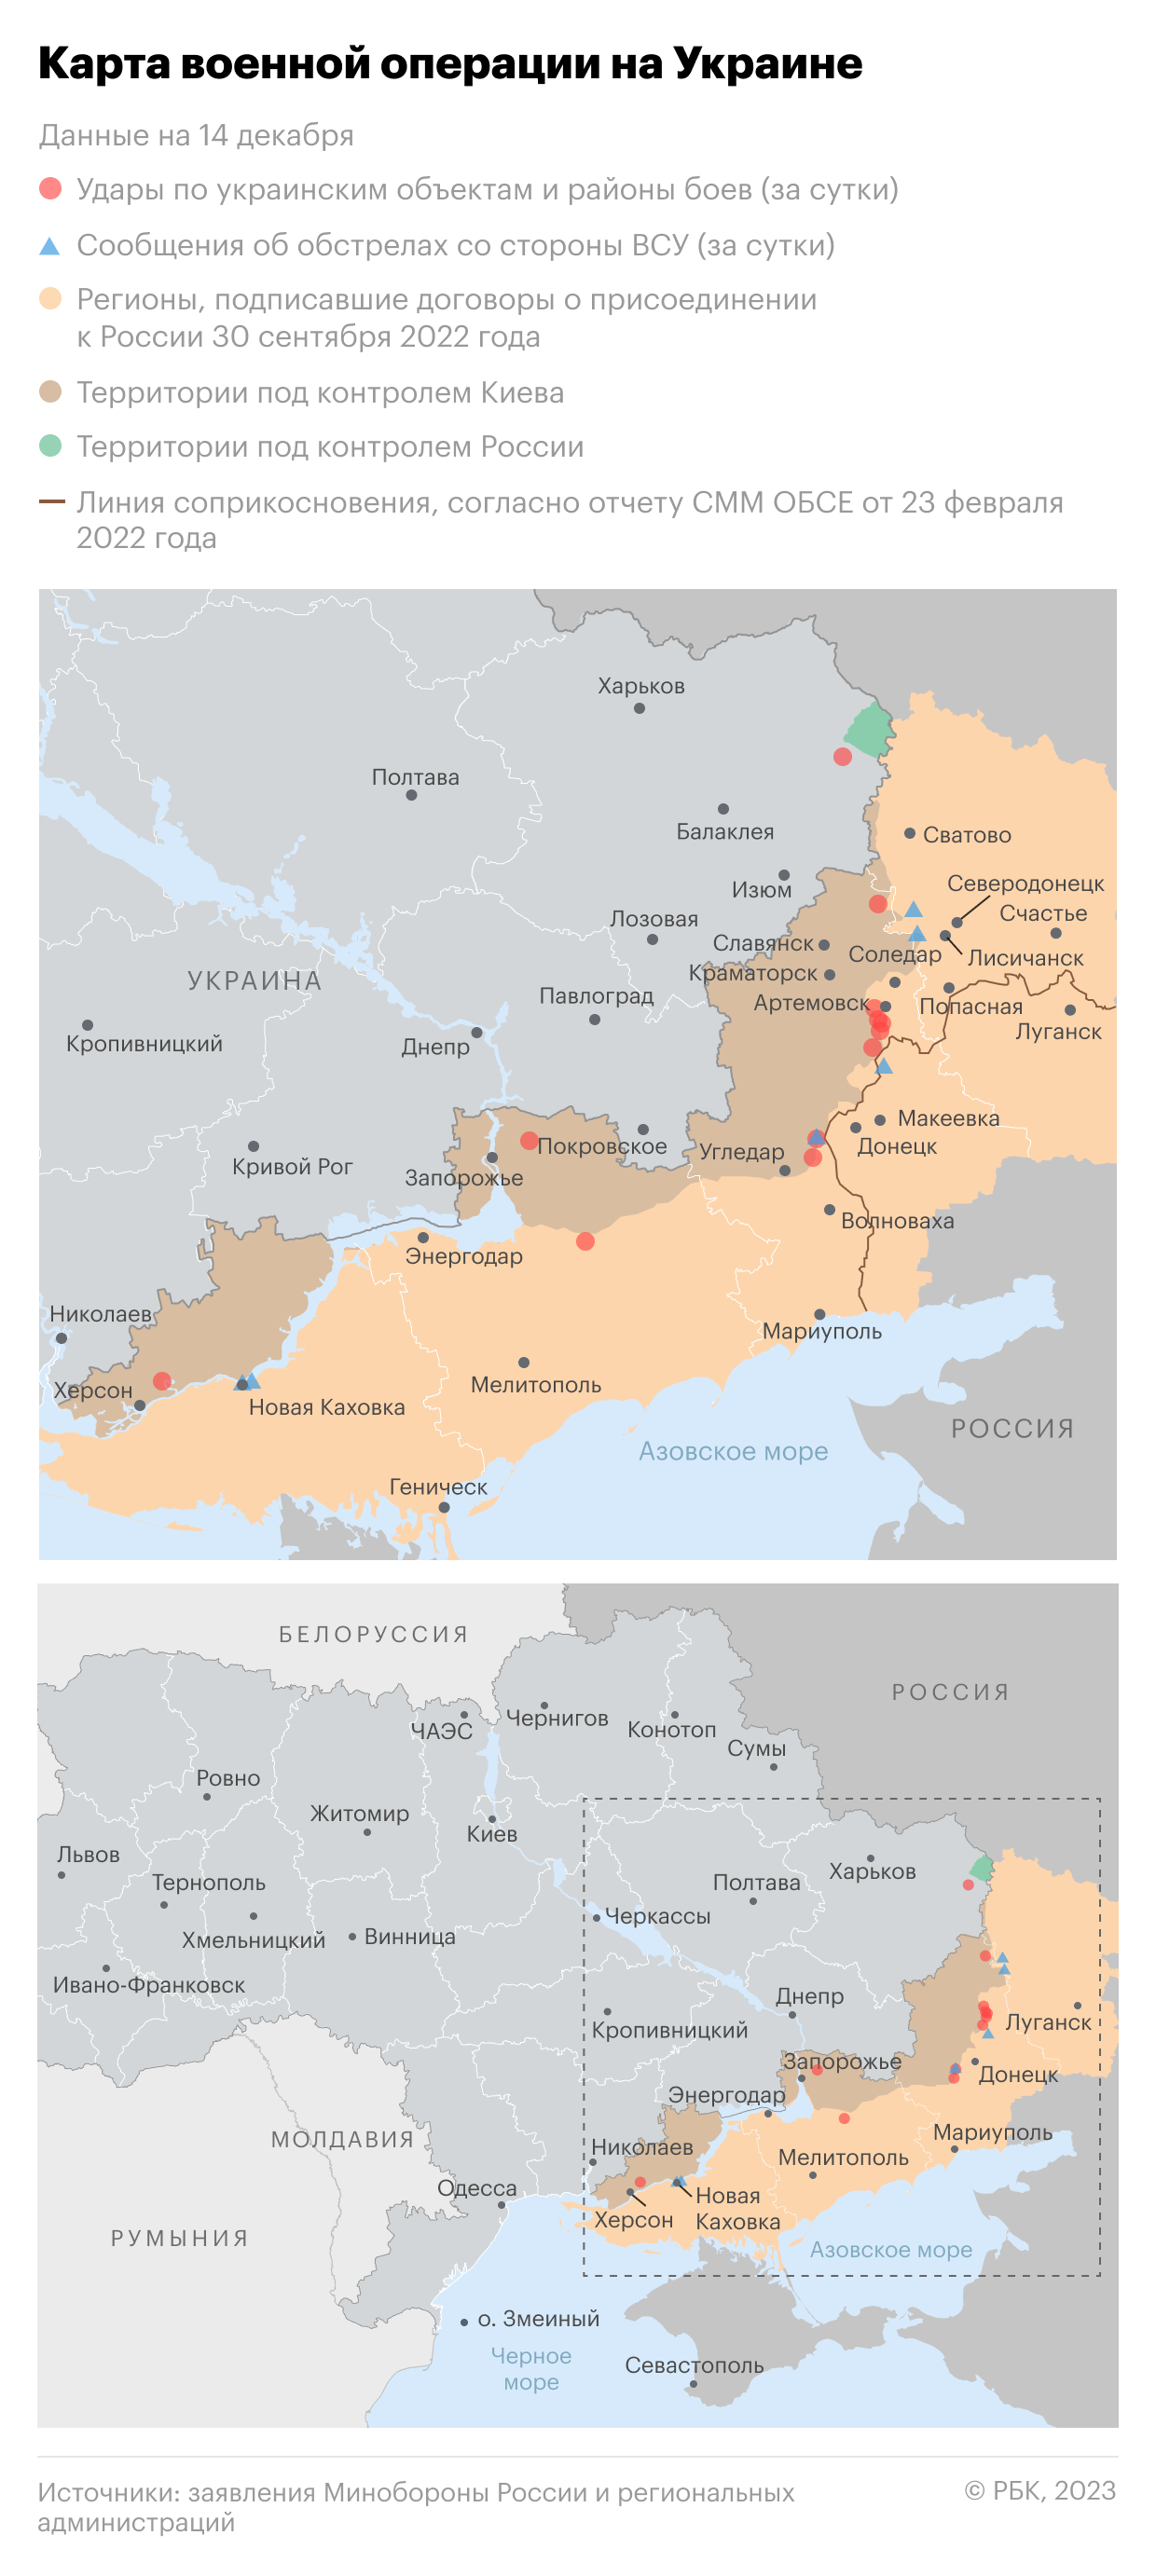 Военная операция на Украине. Карта на 14 декабря